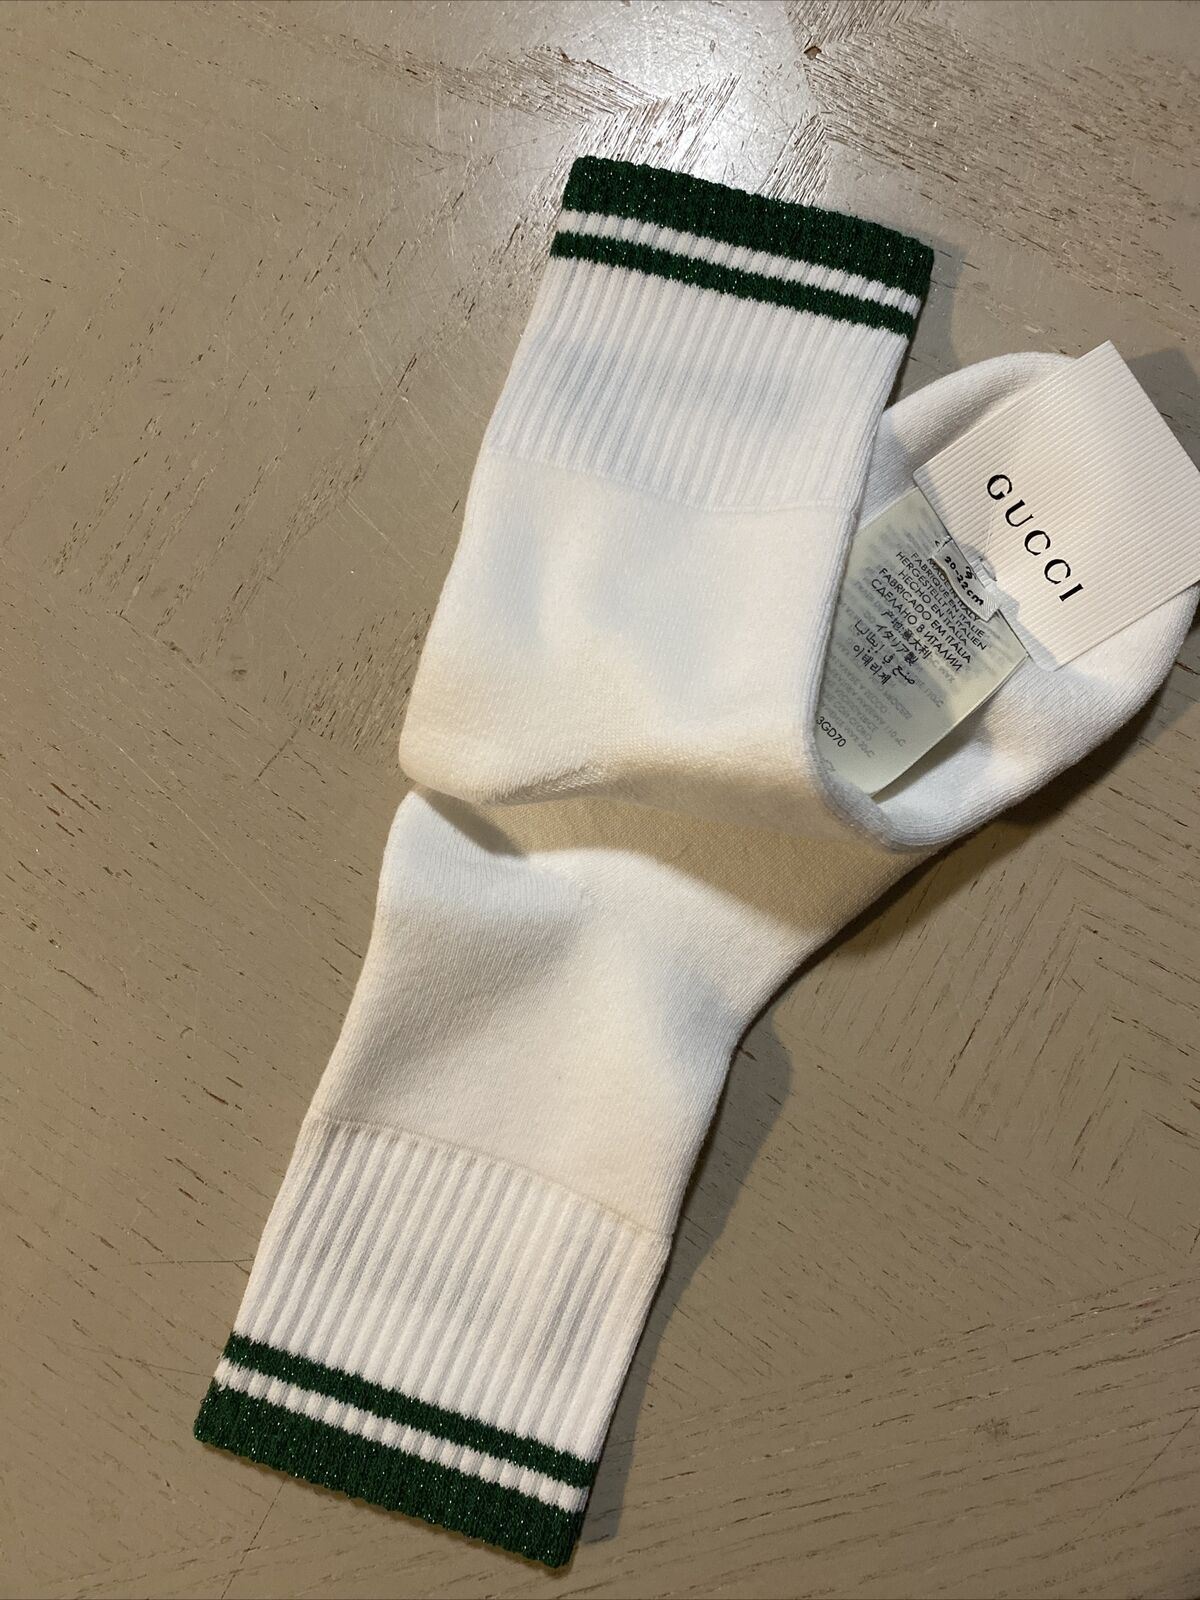 Neu mit Etikett: Gucci-Baumwollsocken mit Gucci-Monogramm, Weiß/Grün, Größe M, Italien